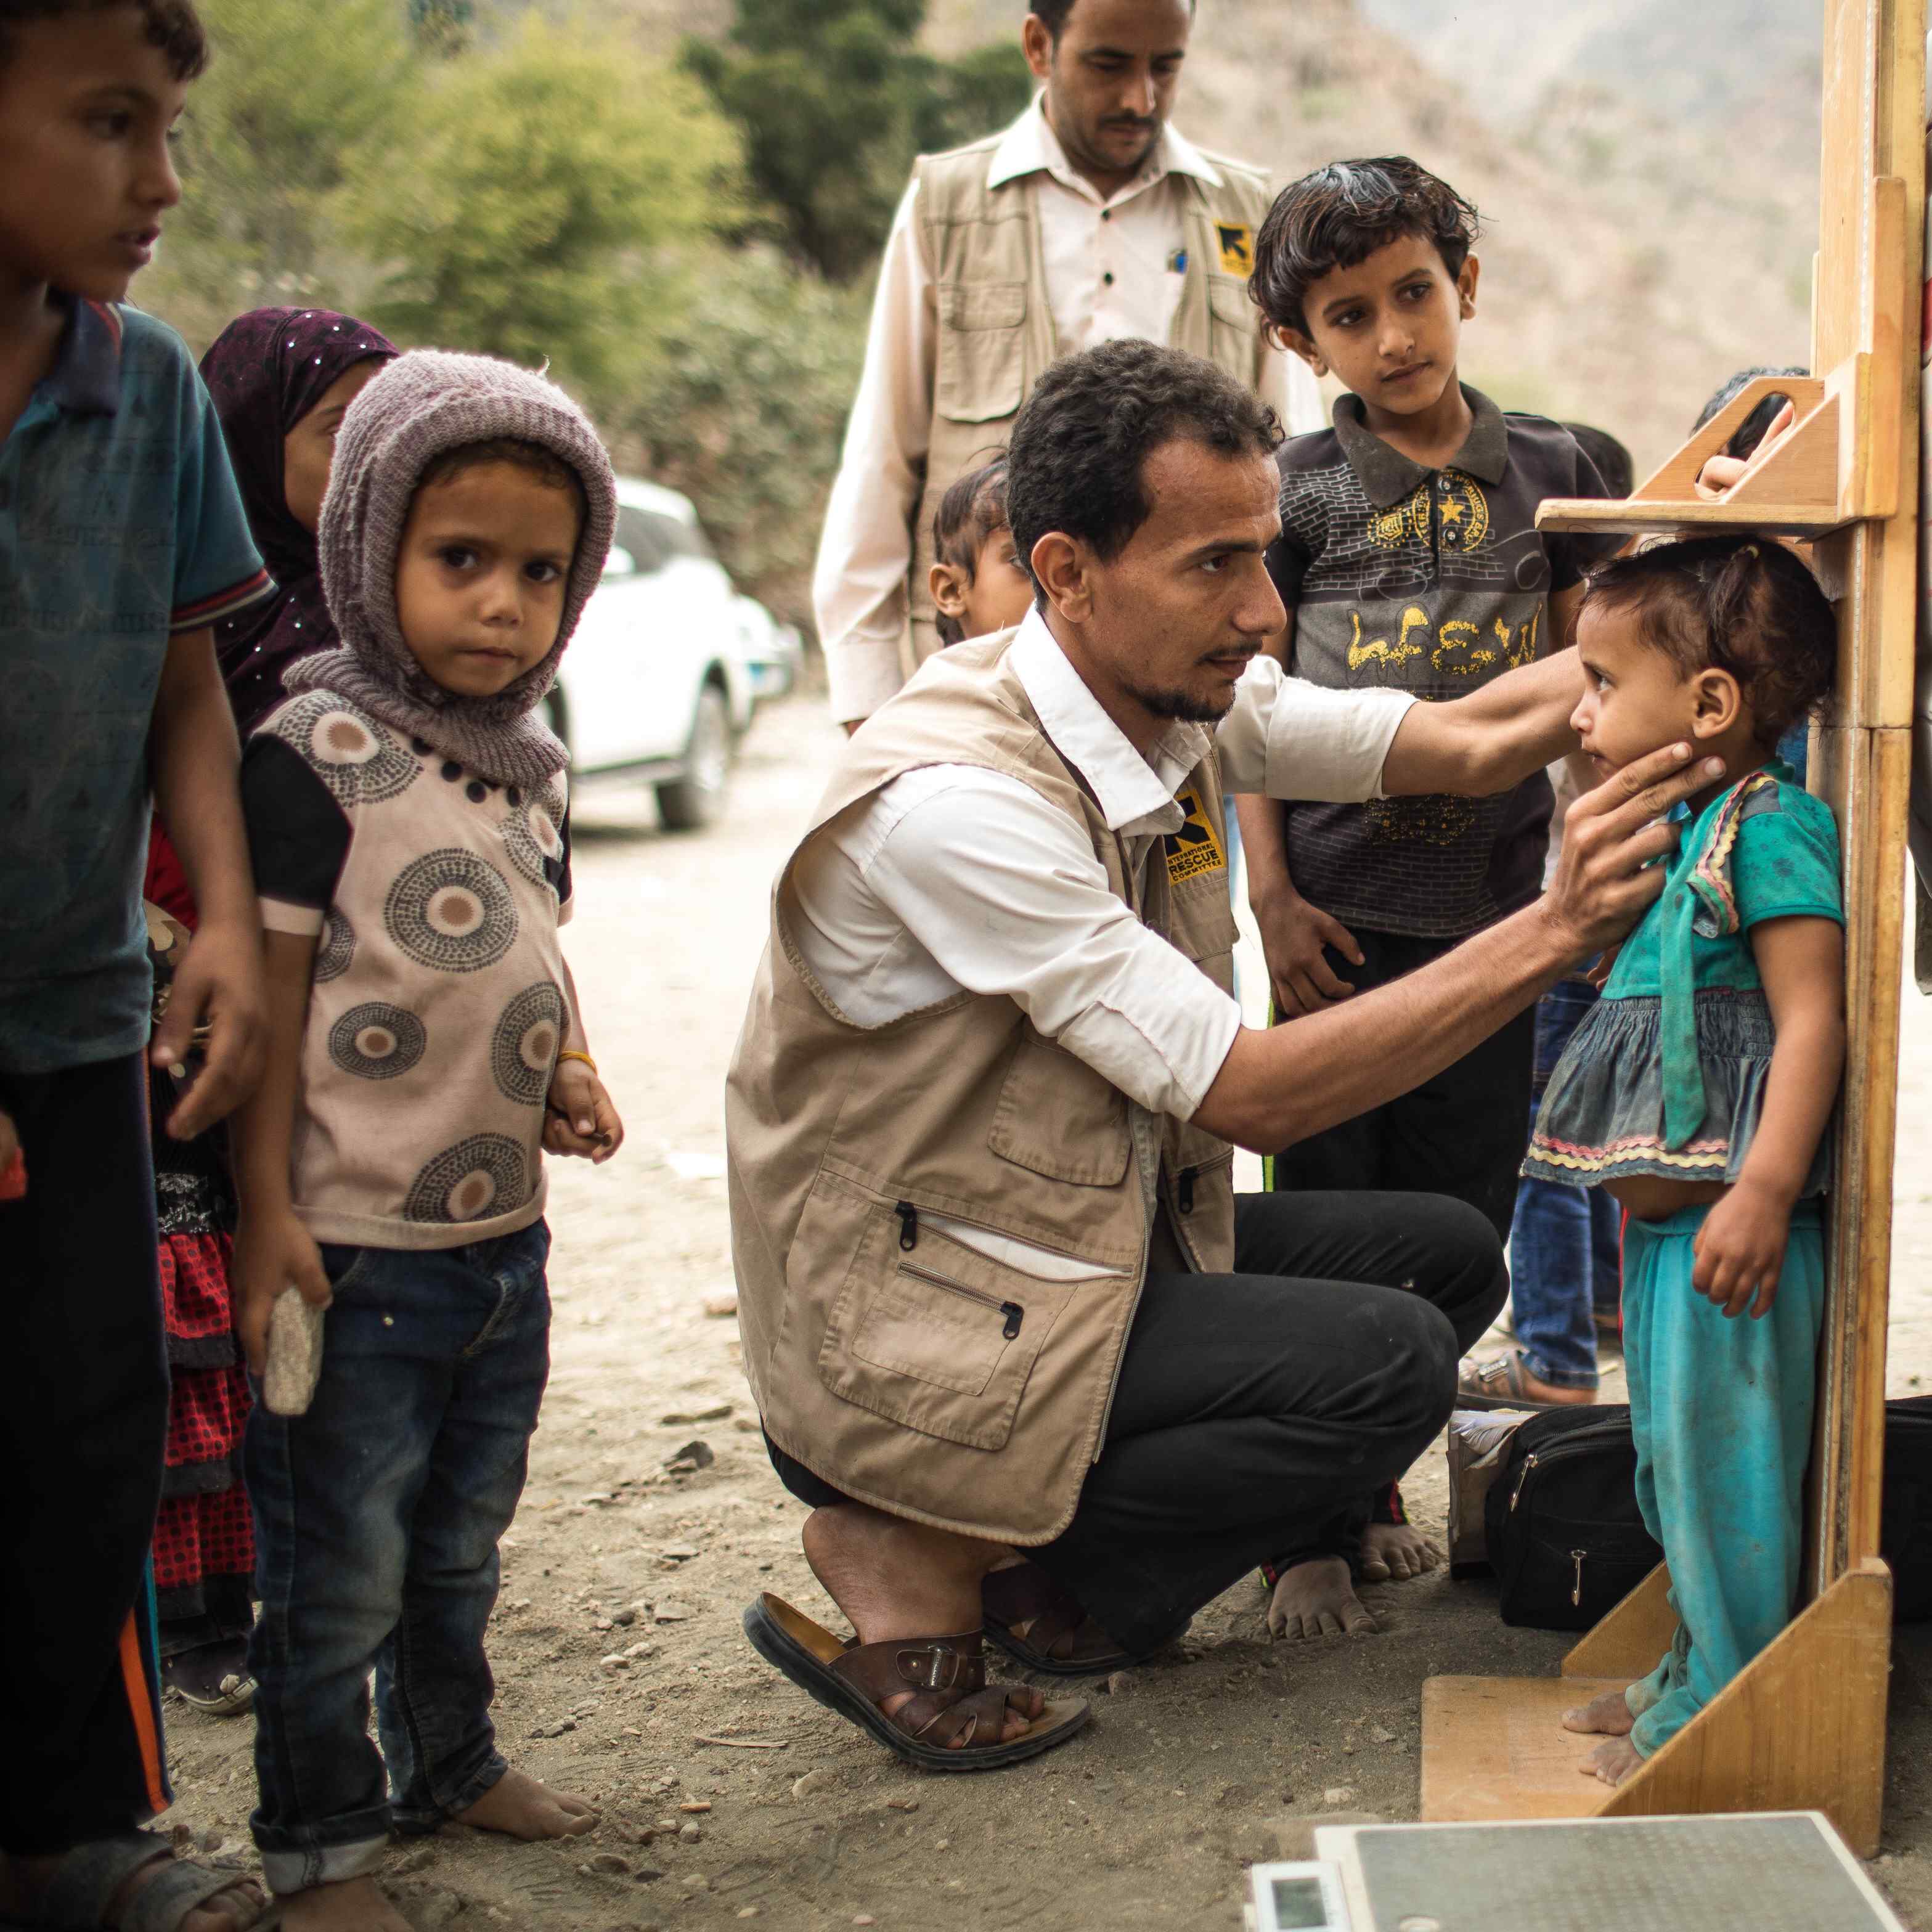 IRC 이동진료소의한남성의료진이예멘의외딴산지마을에서영양실조 징후를보이는아동을진찰하고, 다른아동들이그장면을지켜보고있습니다.